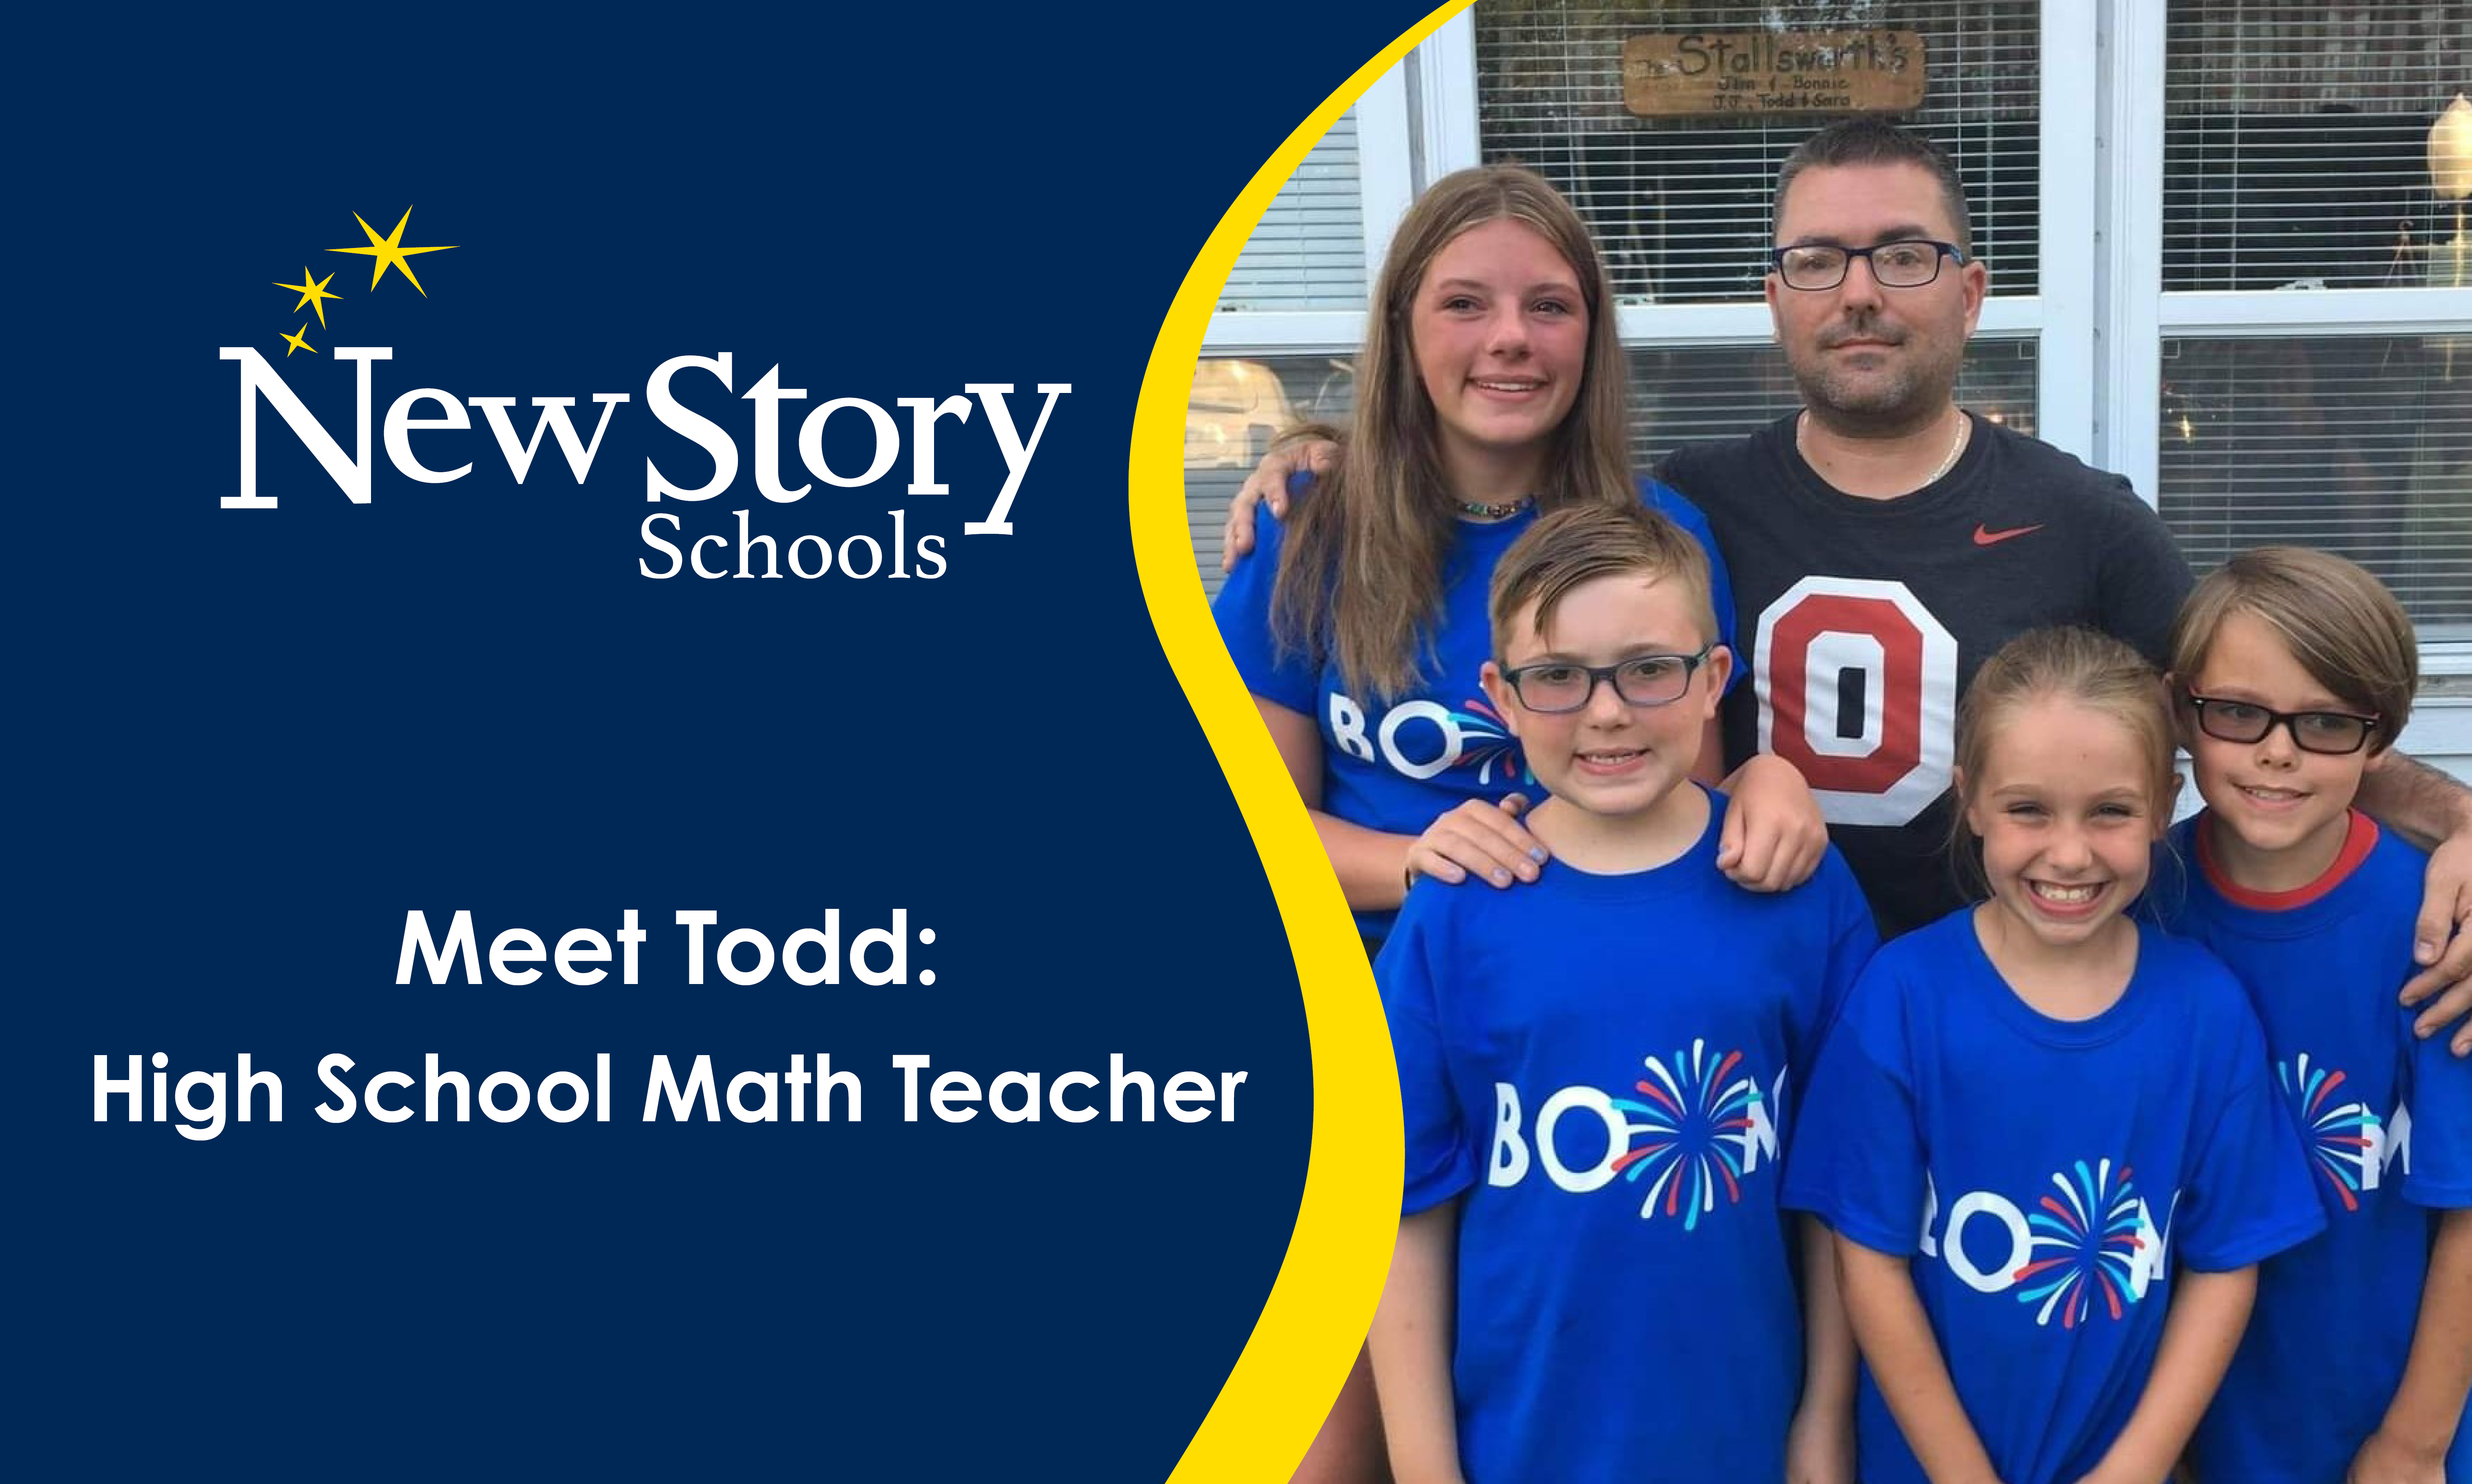 Meet Todd: High School Math Teacher